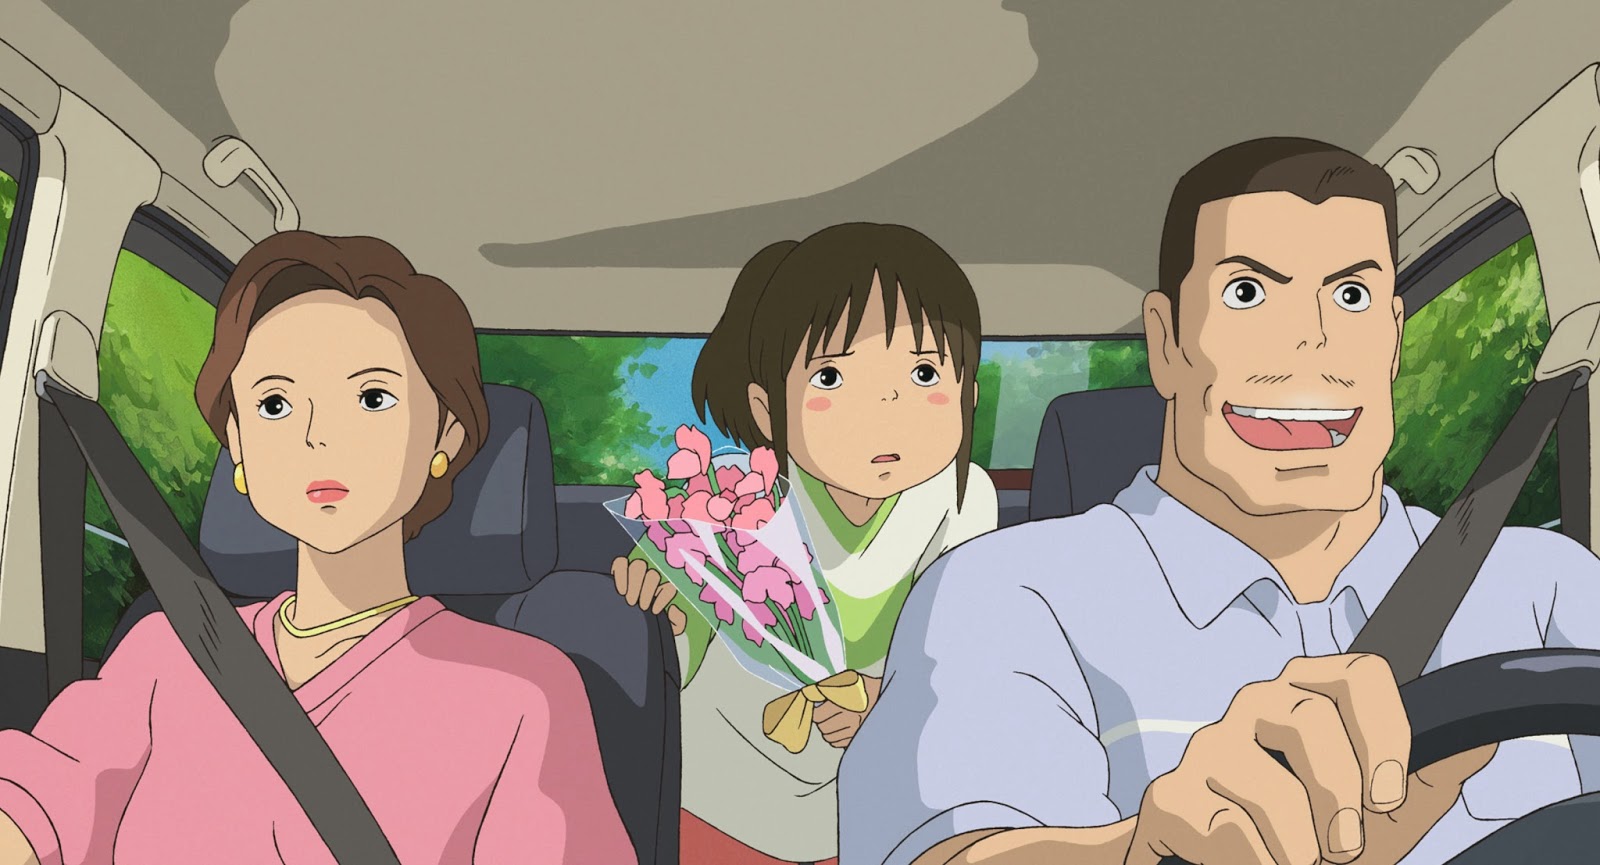 El Viaje de Chihiro no es la historia de niños inocentes que pensábamos que  era